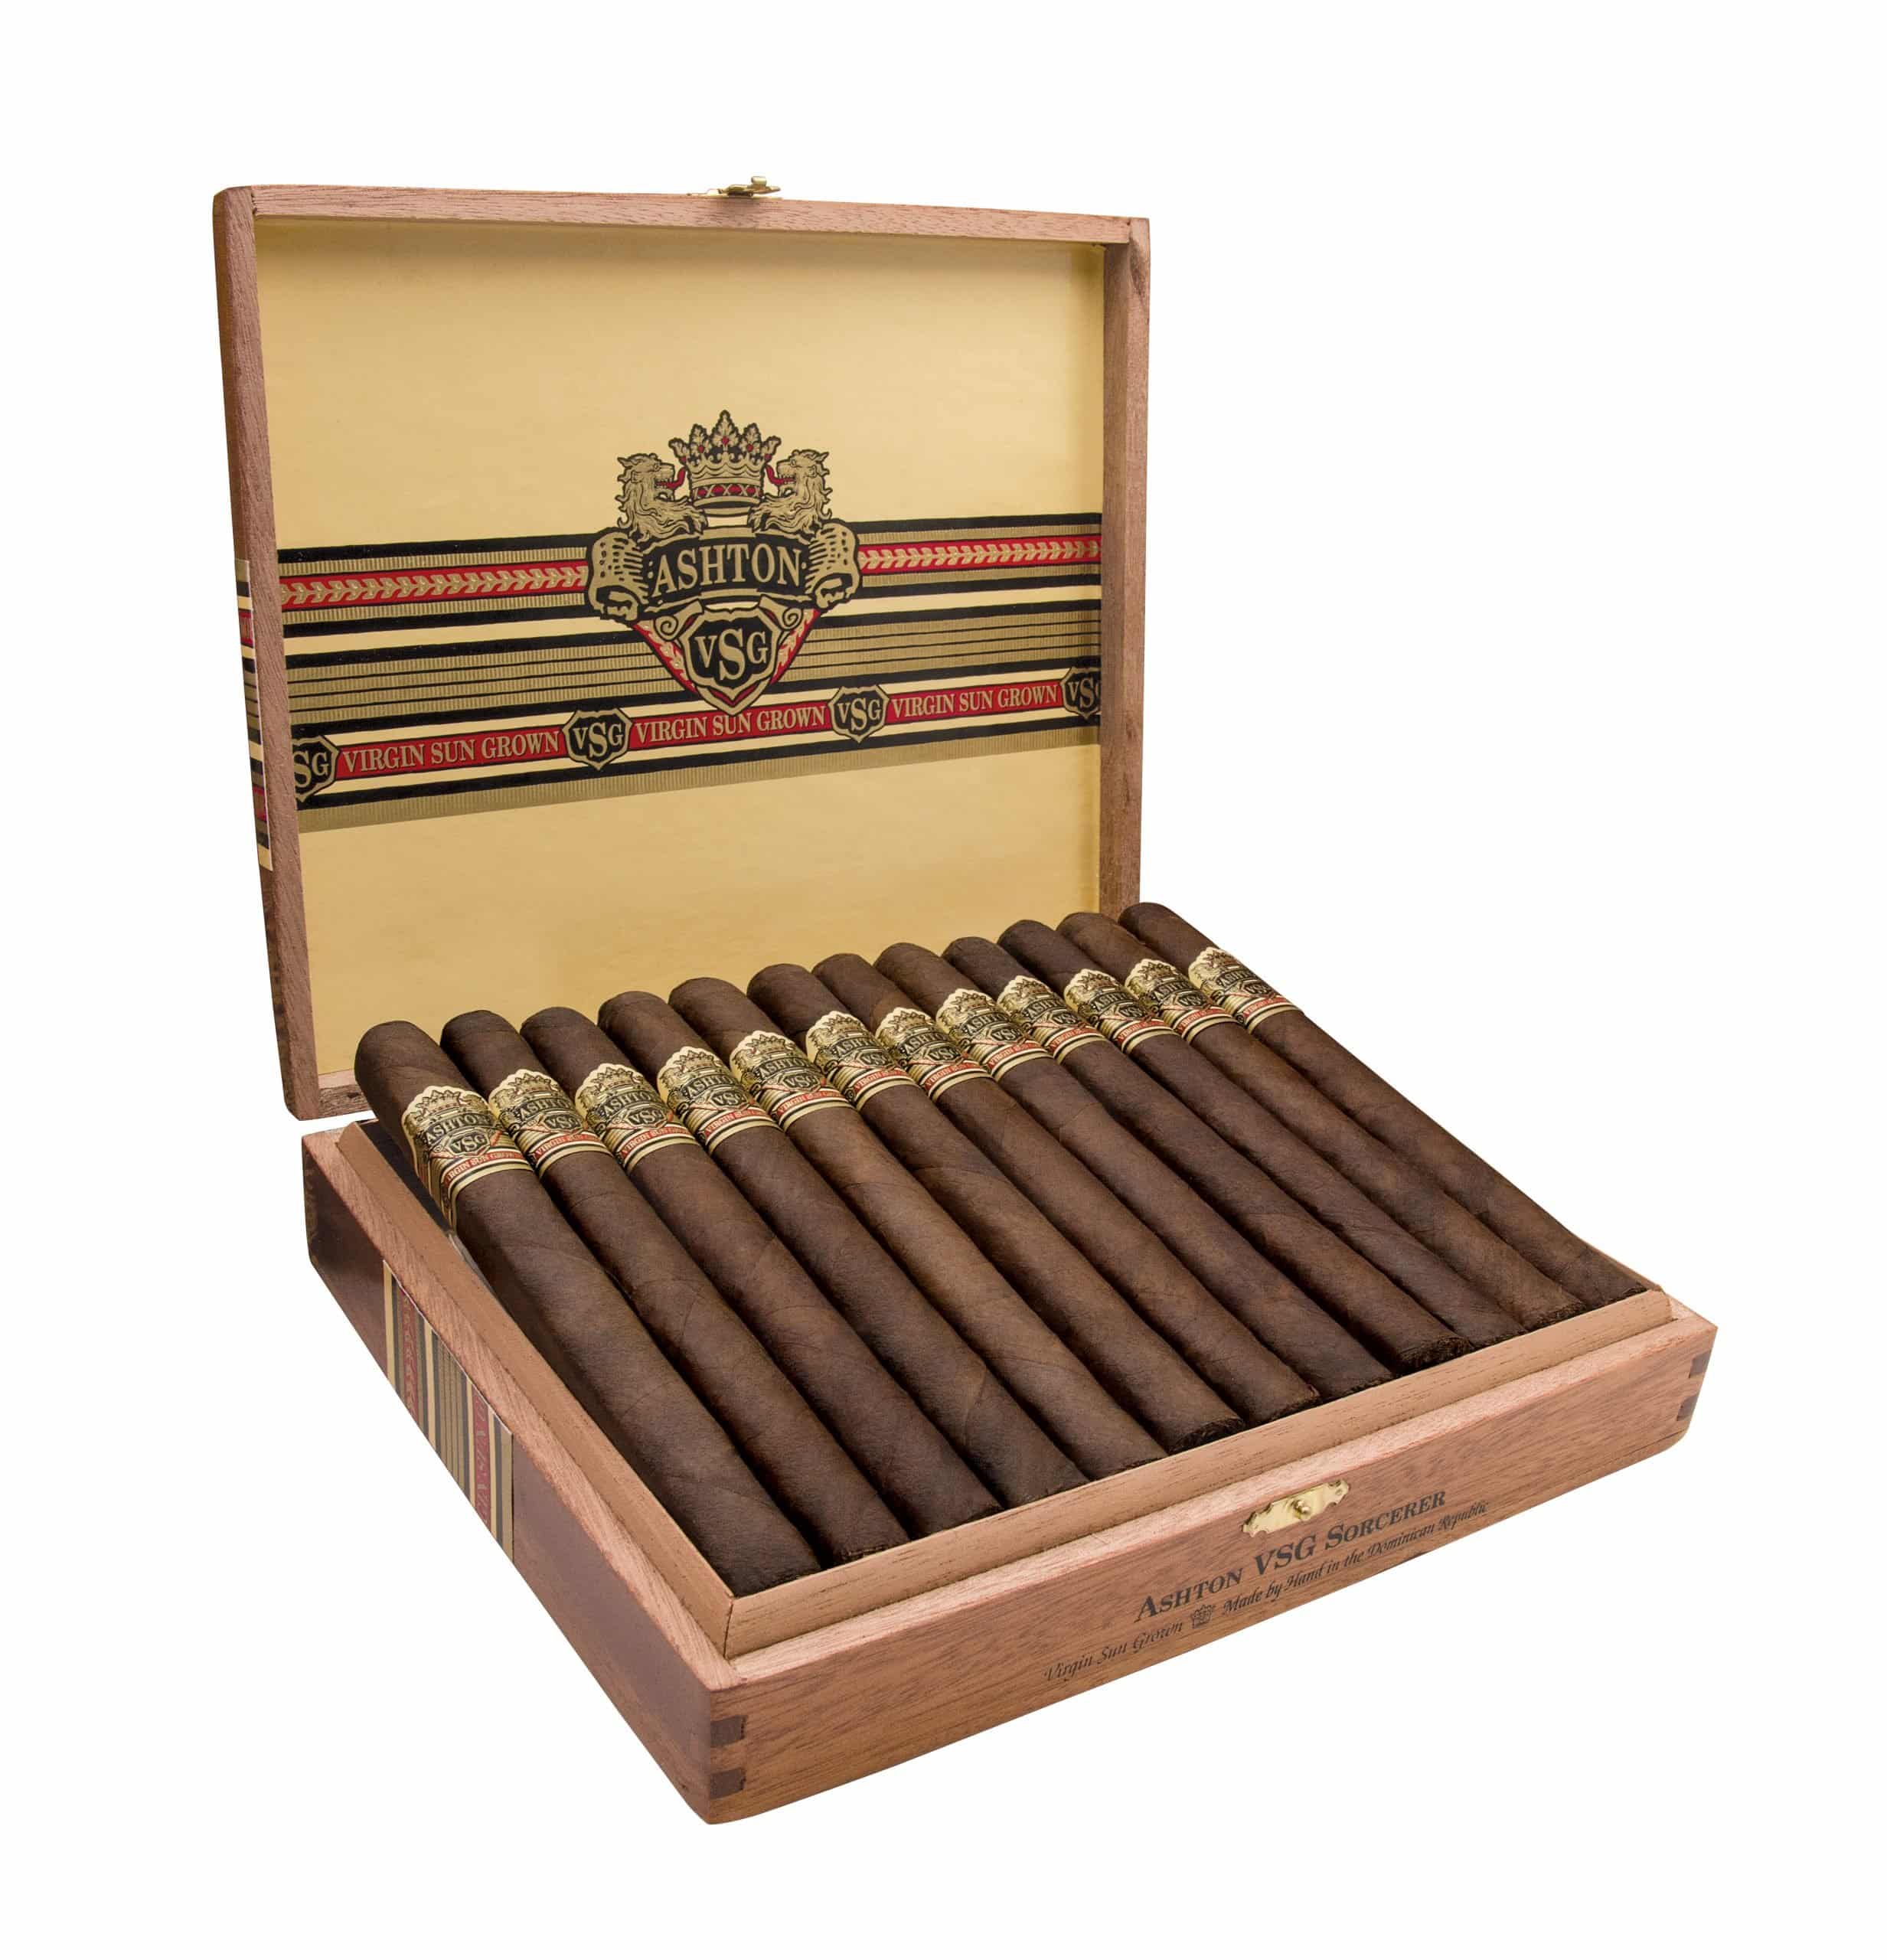 Open box of 12 Ashton VSG Sorcerer cigars